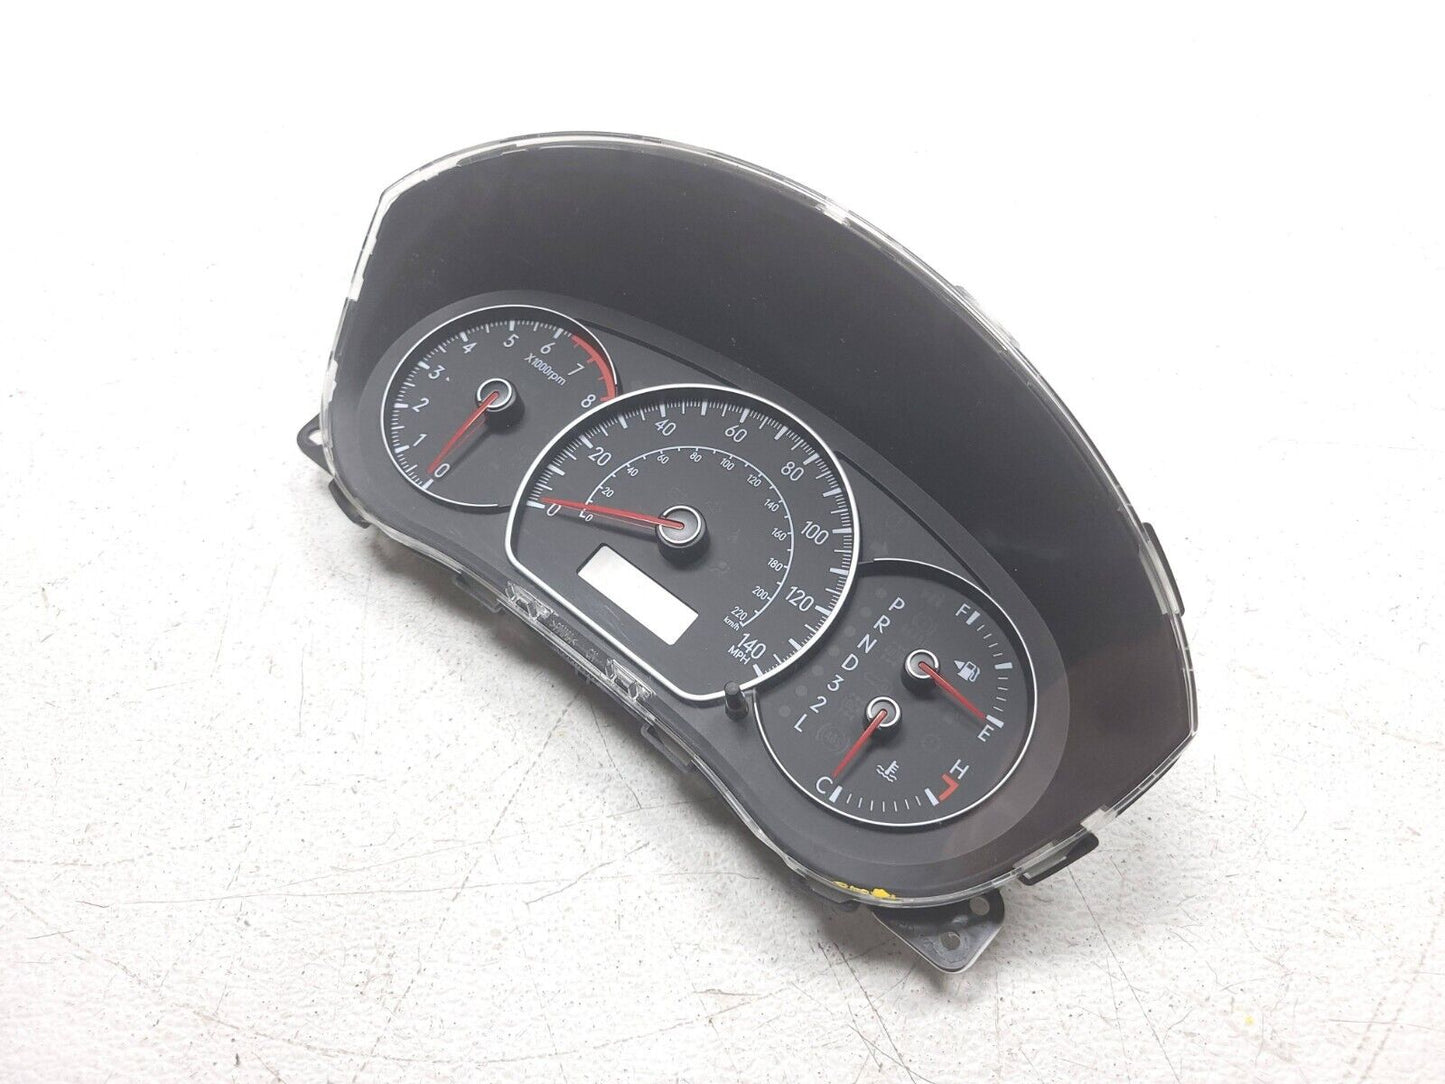 2007 - 2009 Suzuki Sx4 Instrument Cluster Speedometer 34110-80j40 OEM 83k